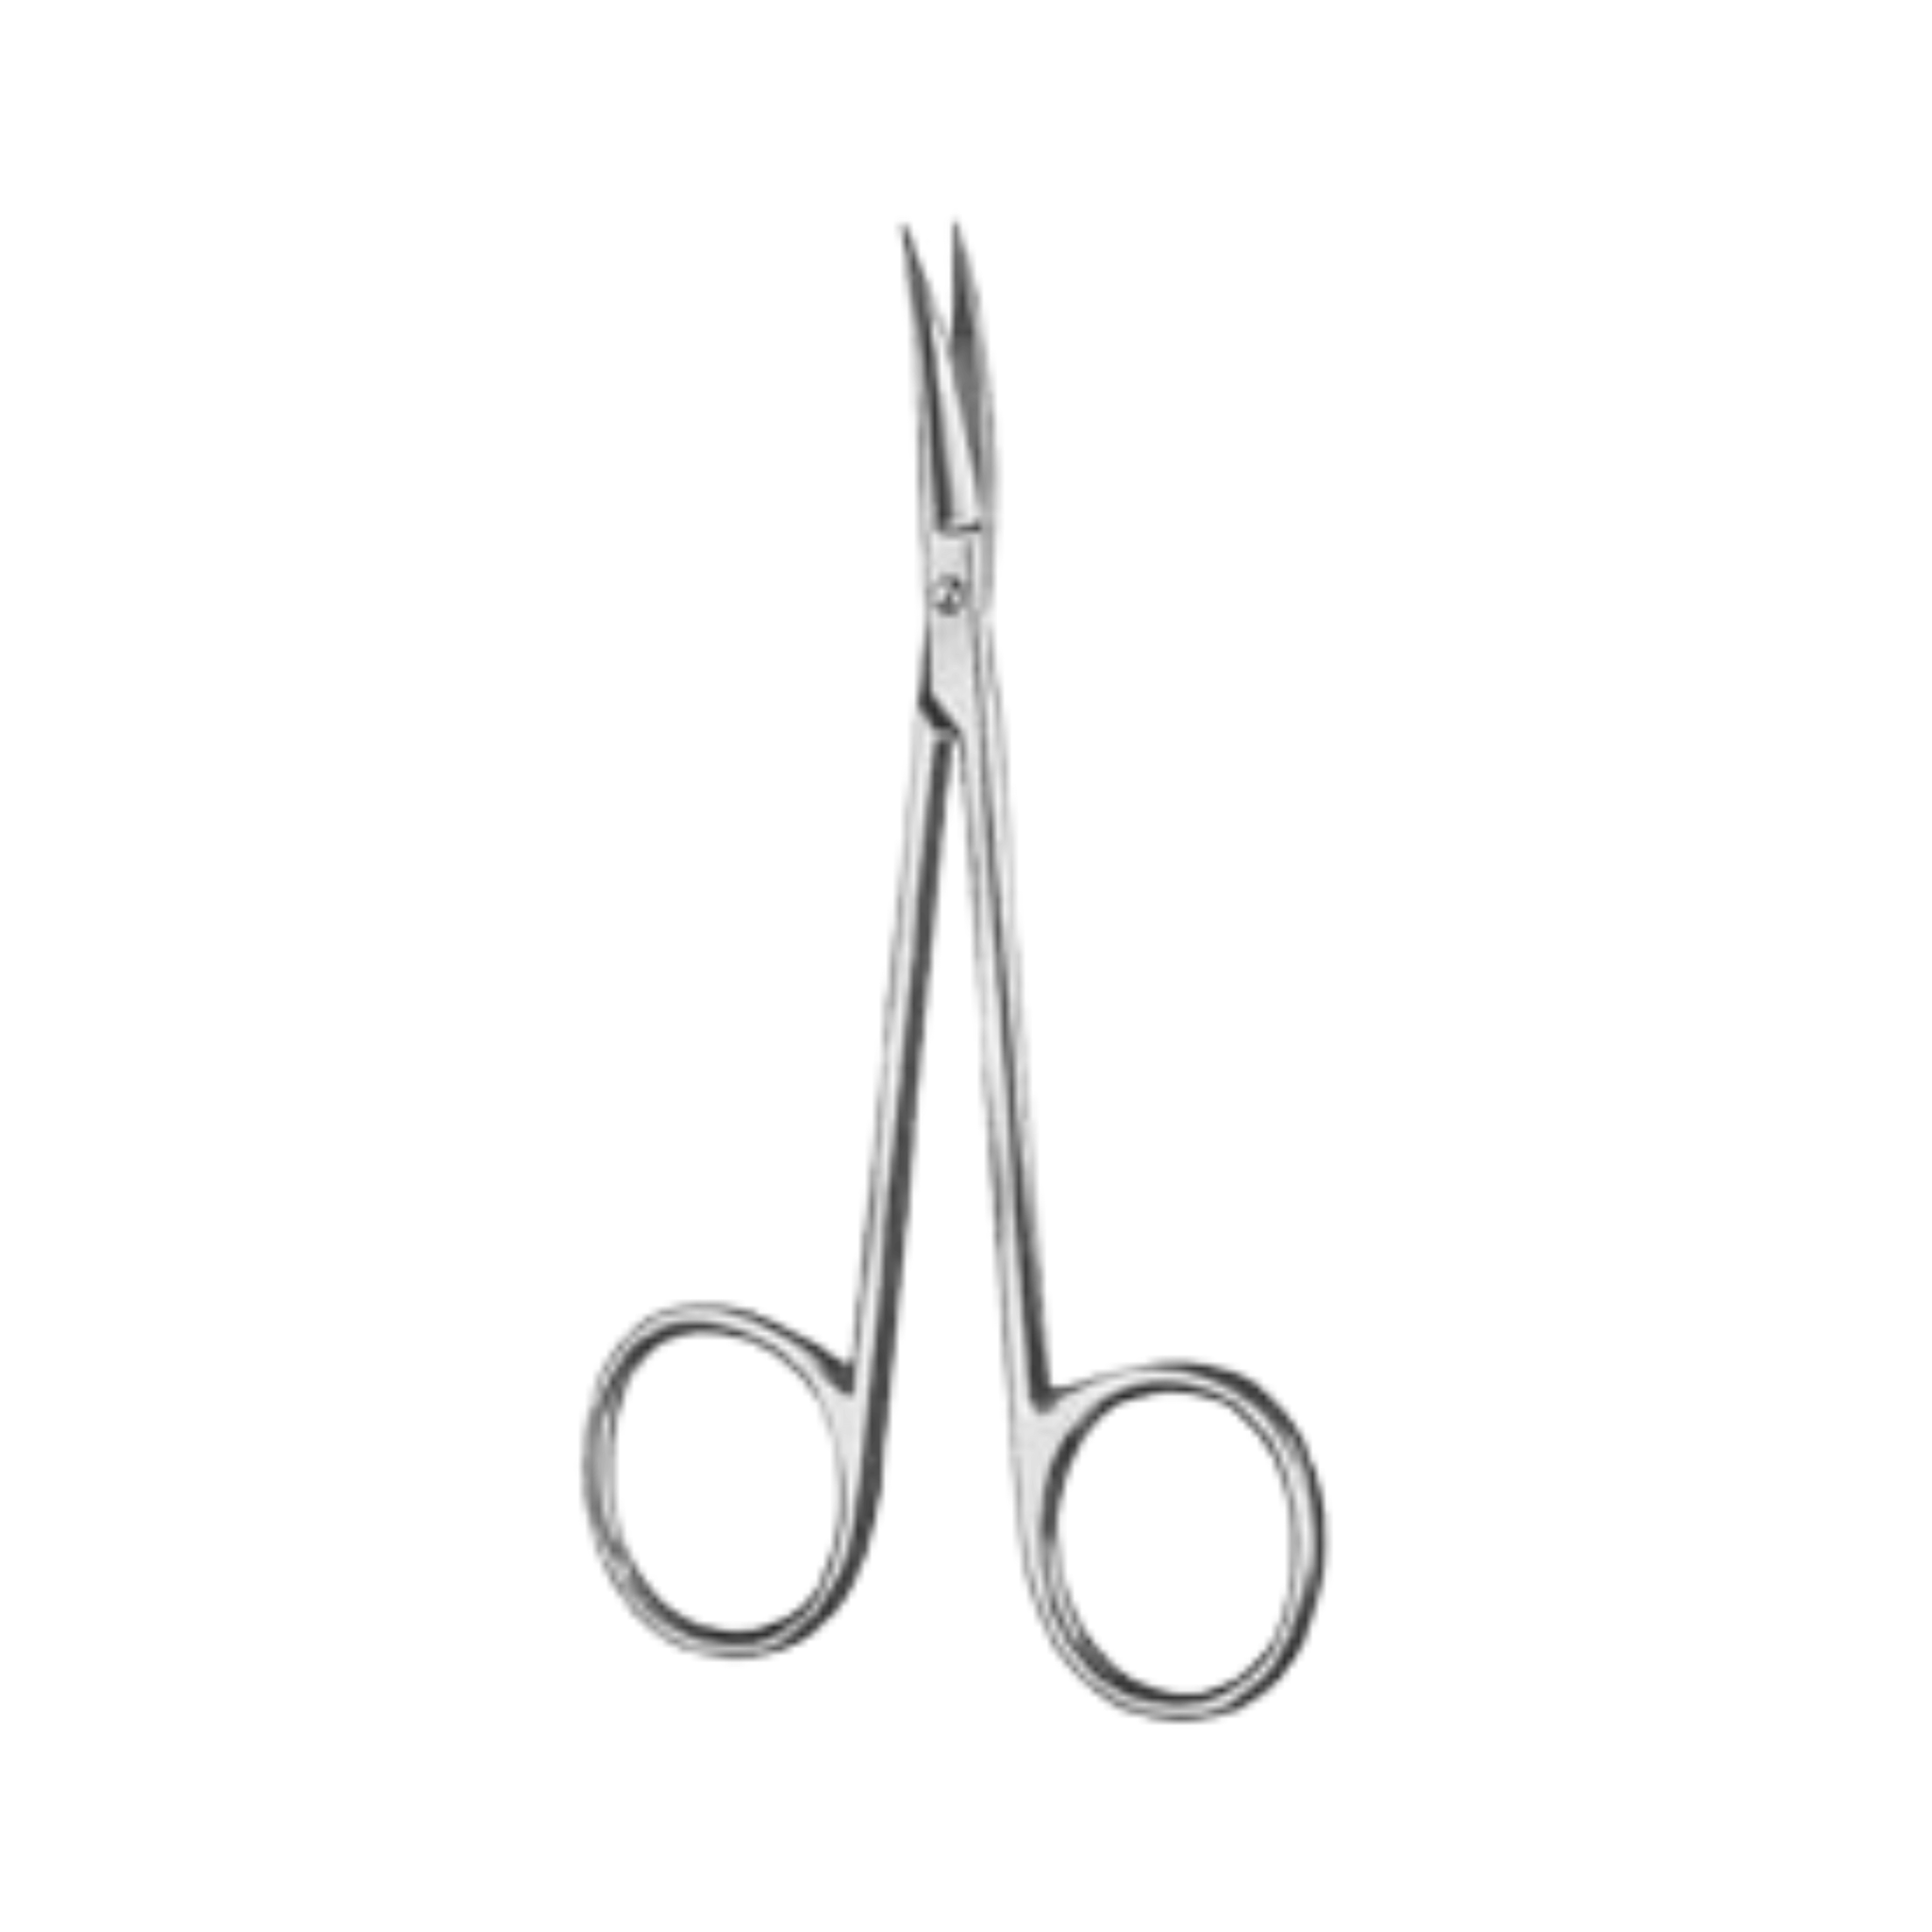 Iris Scissors- SH/SH, Curved, 11.5 cm